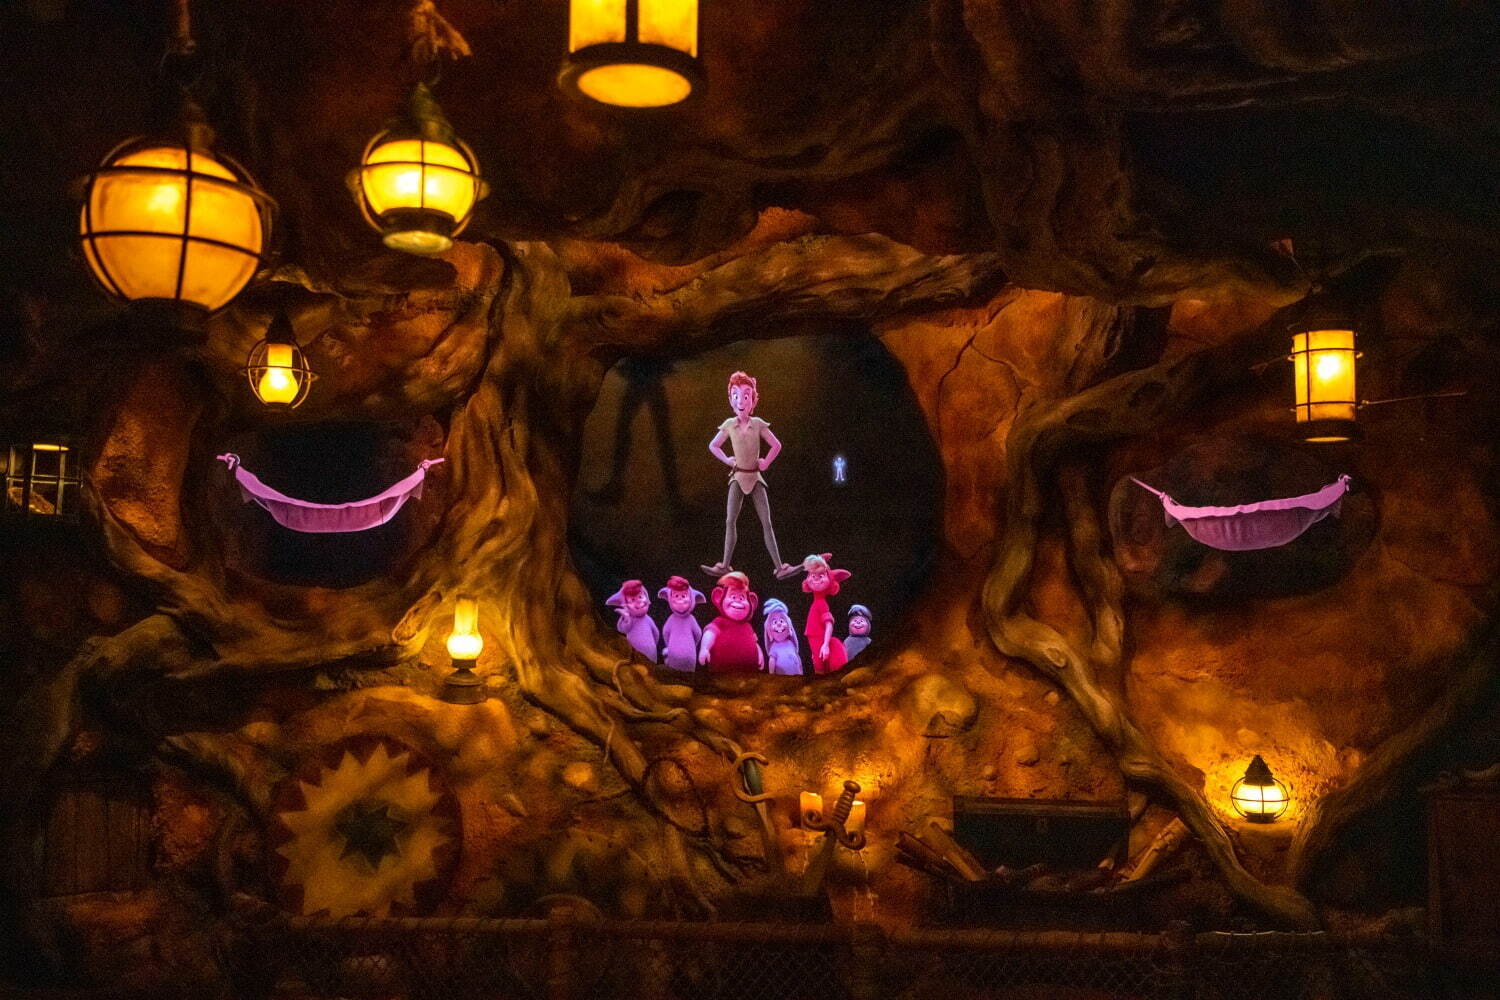 Peter Pan's Never Land - Tokyo DisneySea